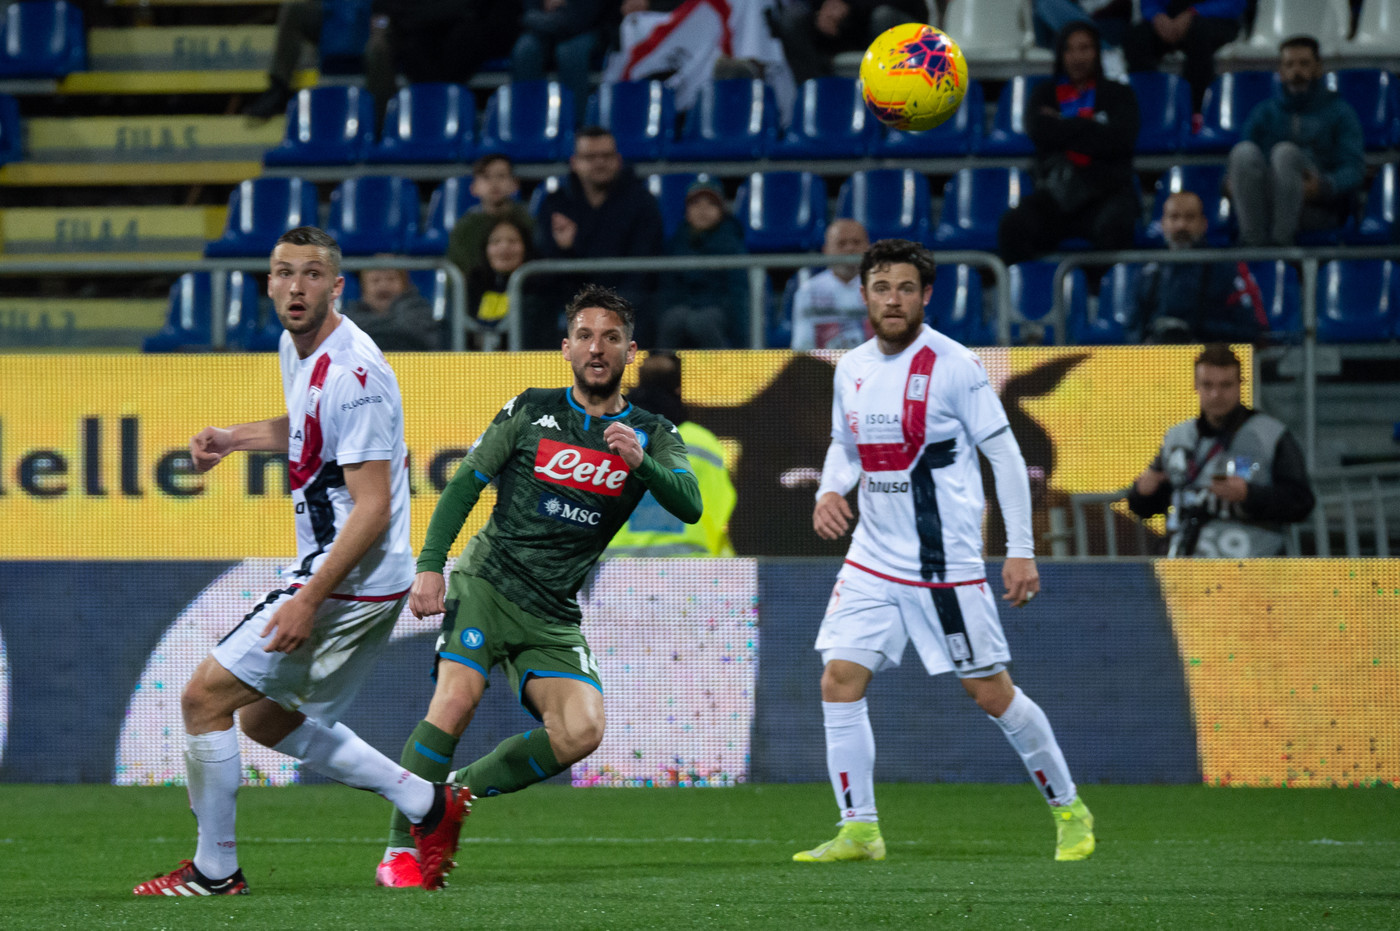 Il Napoli piega il Cagliari con una magia di Mertens: 1-0 al Sant’Elia